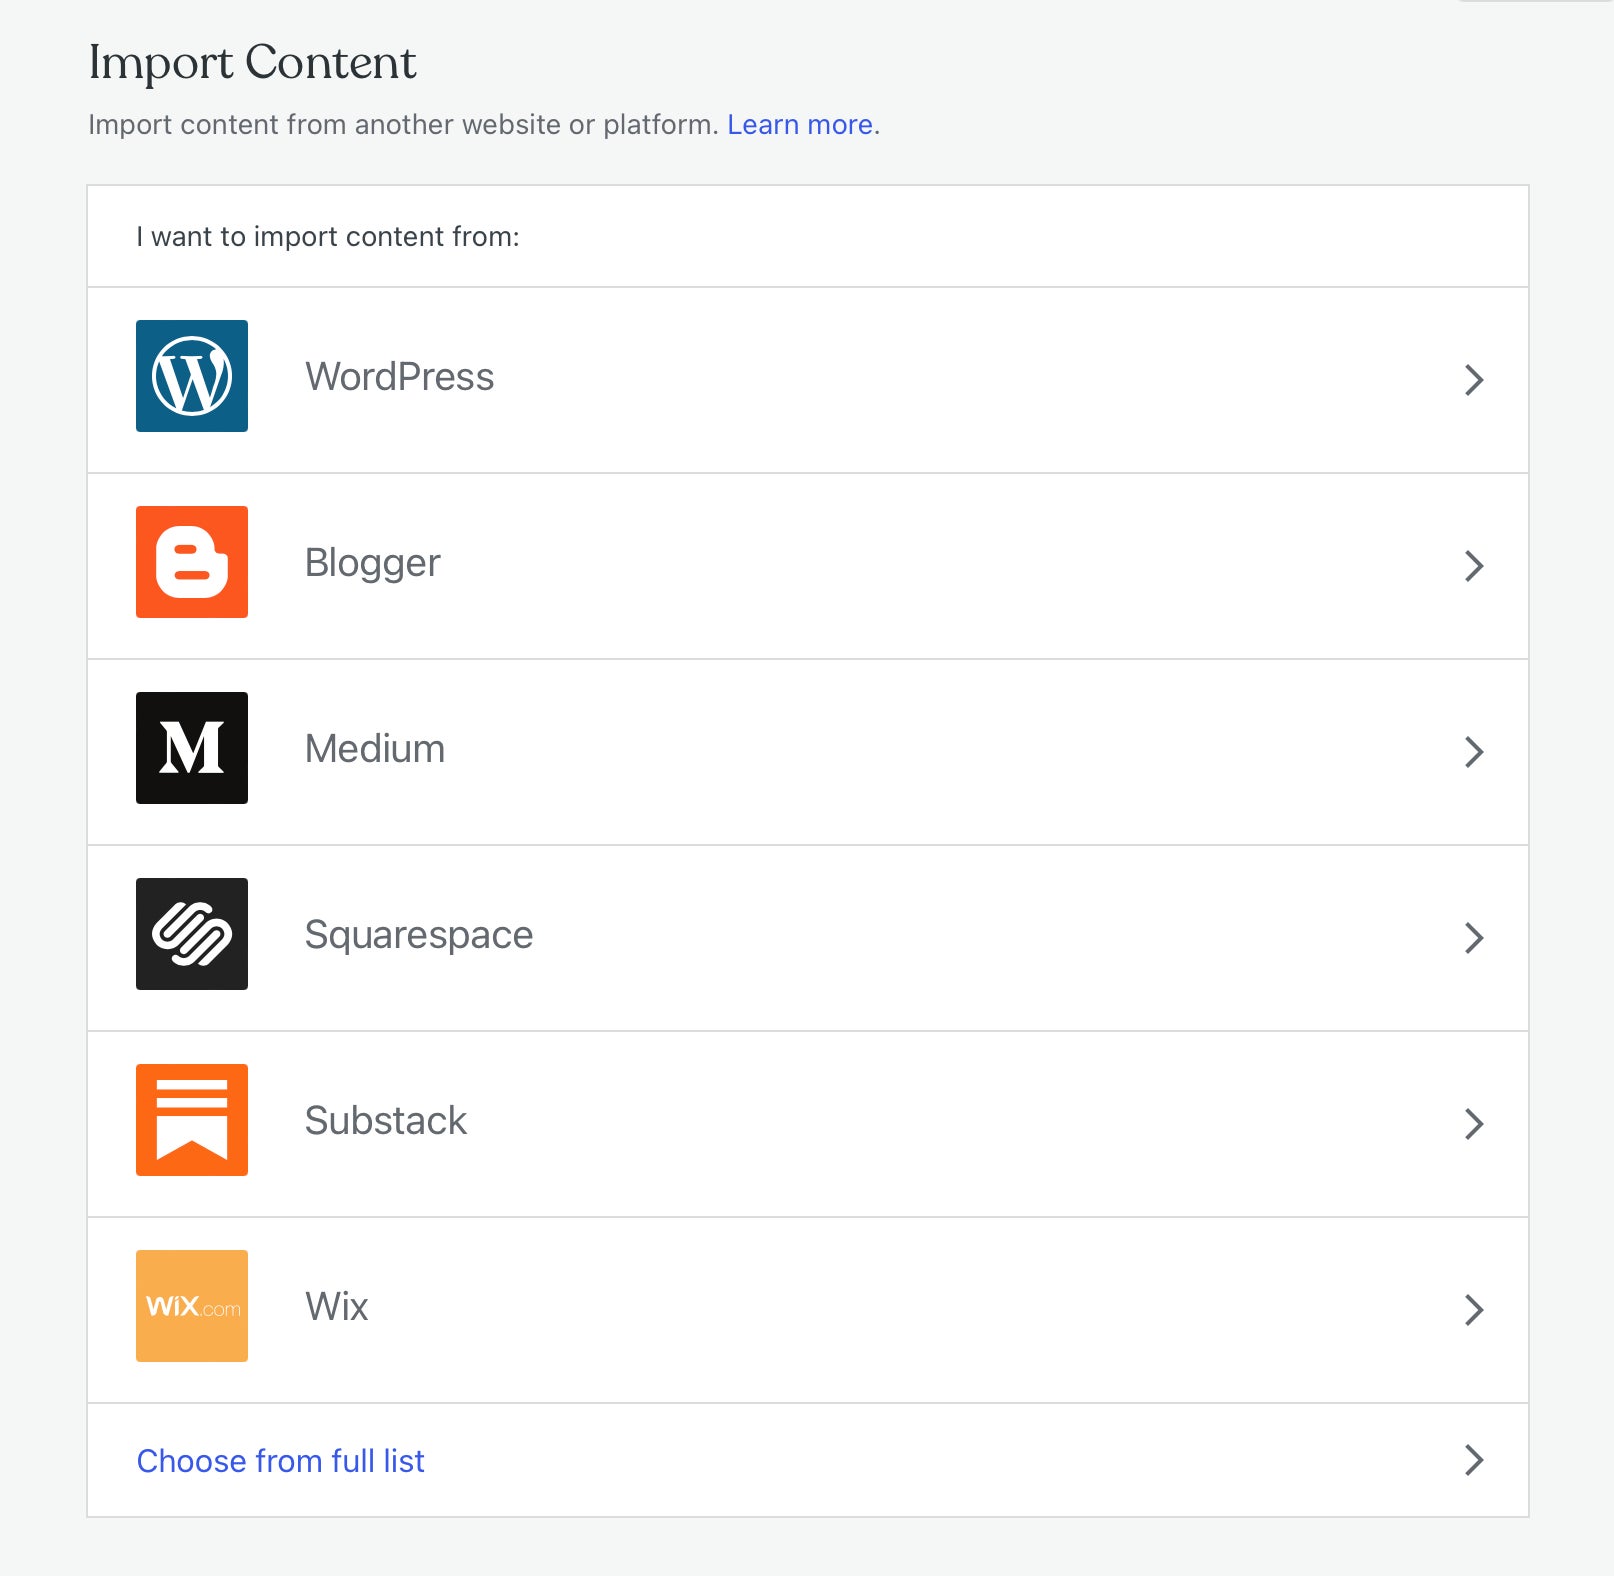 Инструмент WordPress для импорта контента, показывающий список совместимых сайтов, а также ссылку для расширения списка внизу, по которой вам понадобится найти инструмент для импорта из LiveJournal.